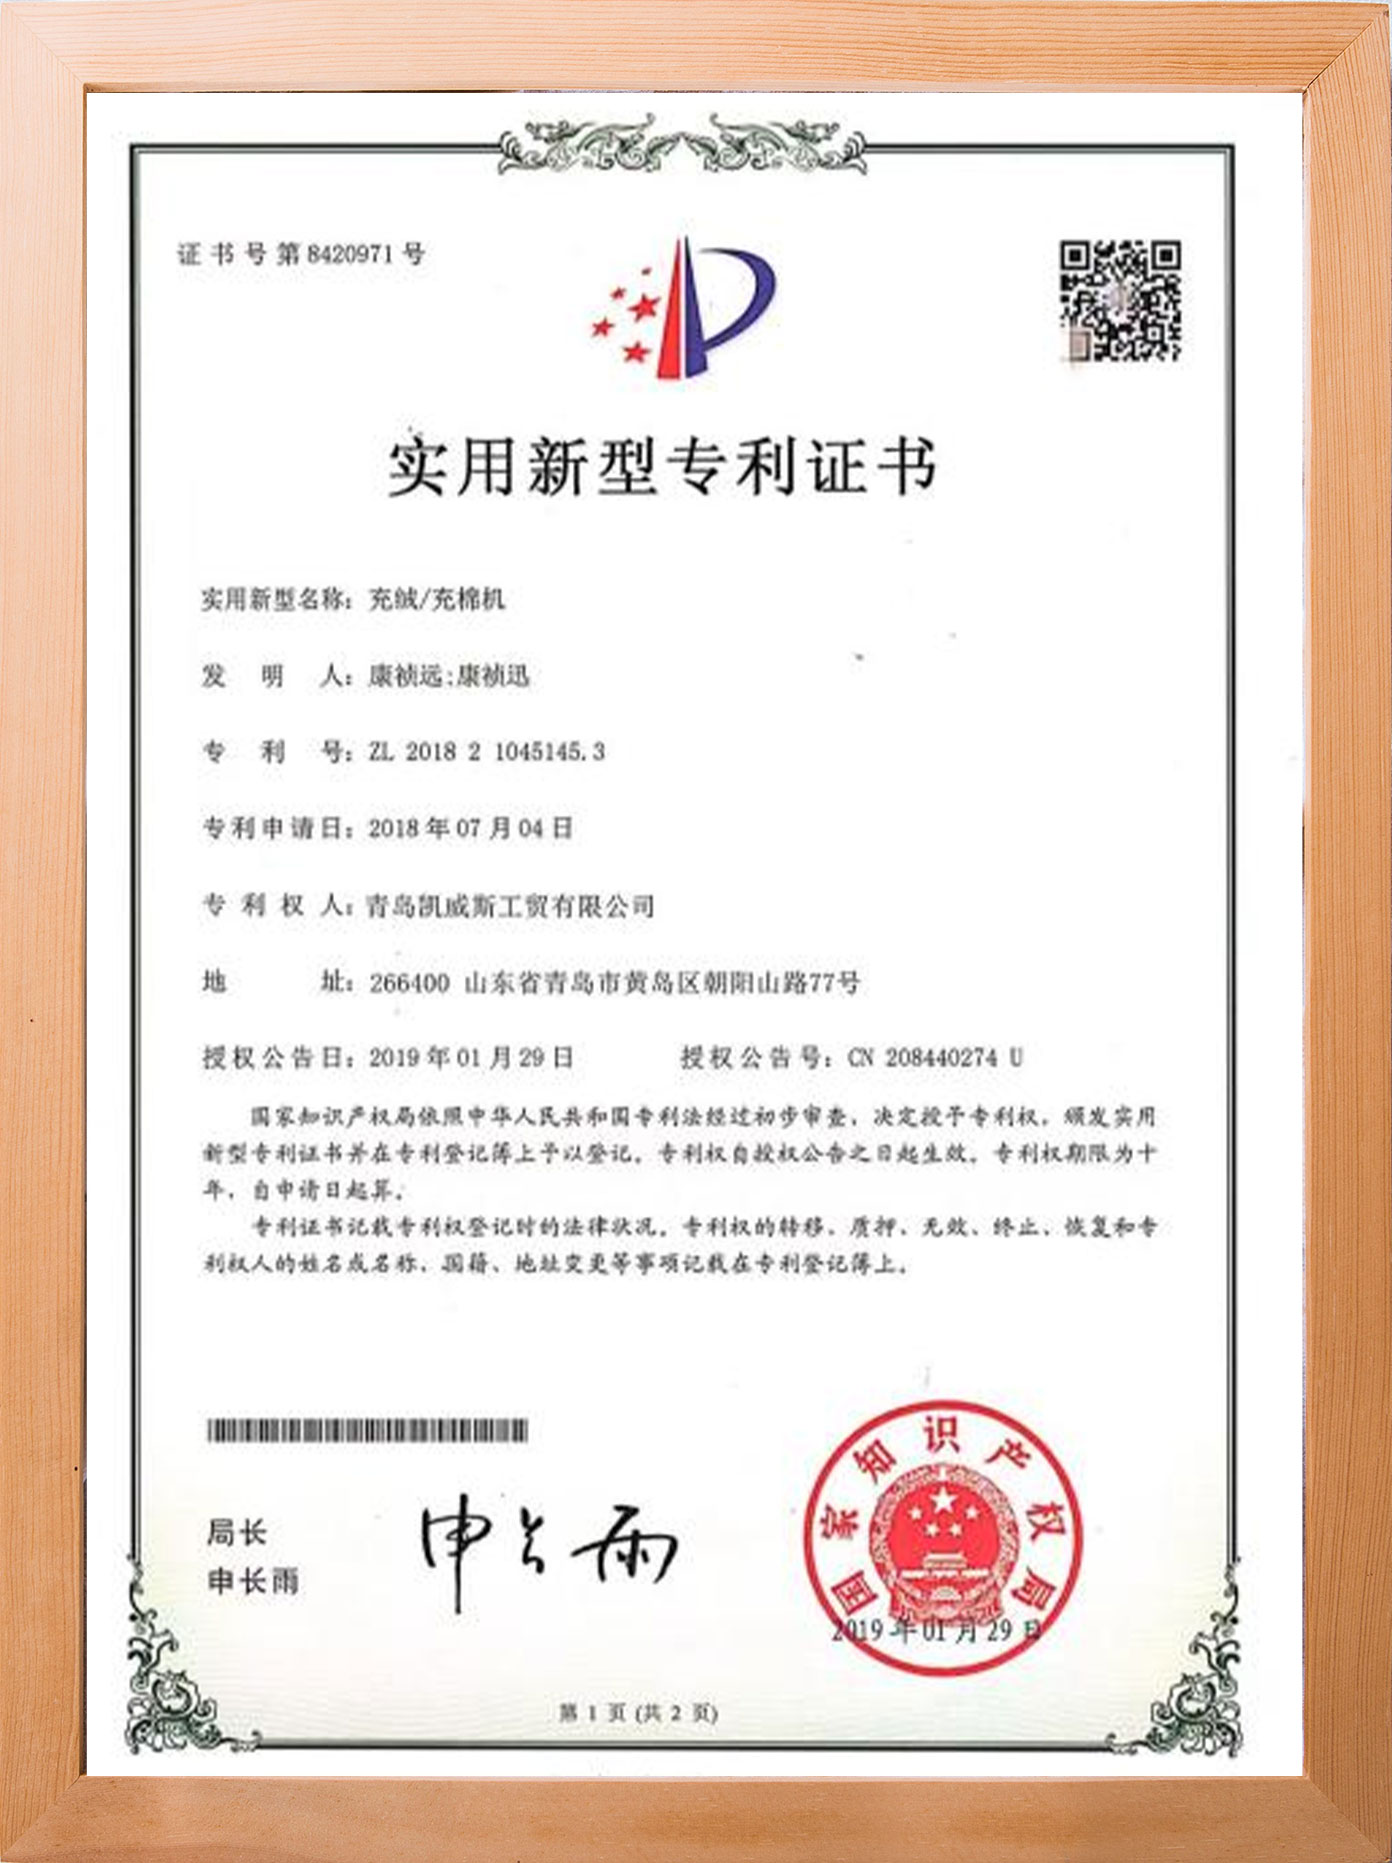 сертифікат1